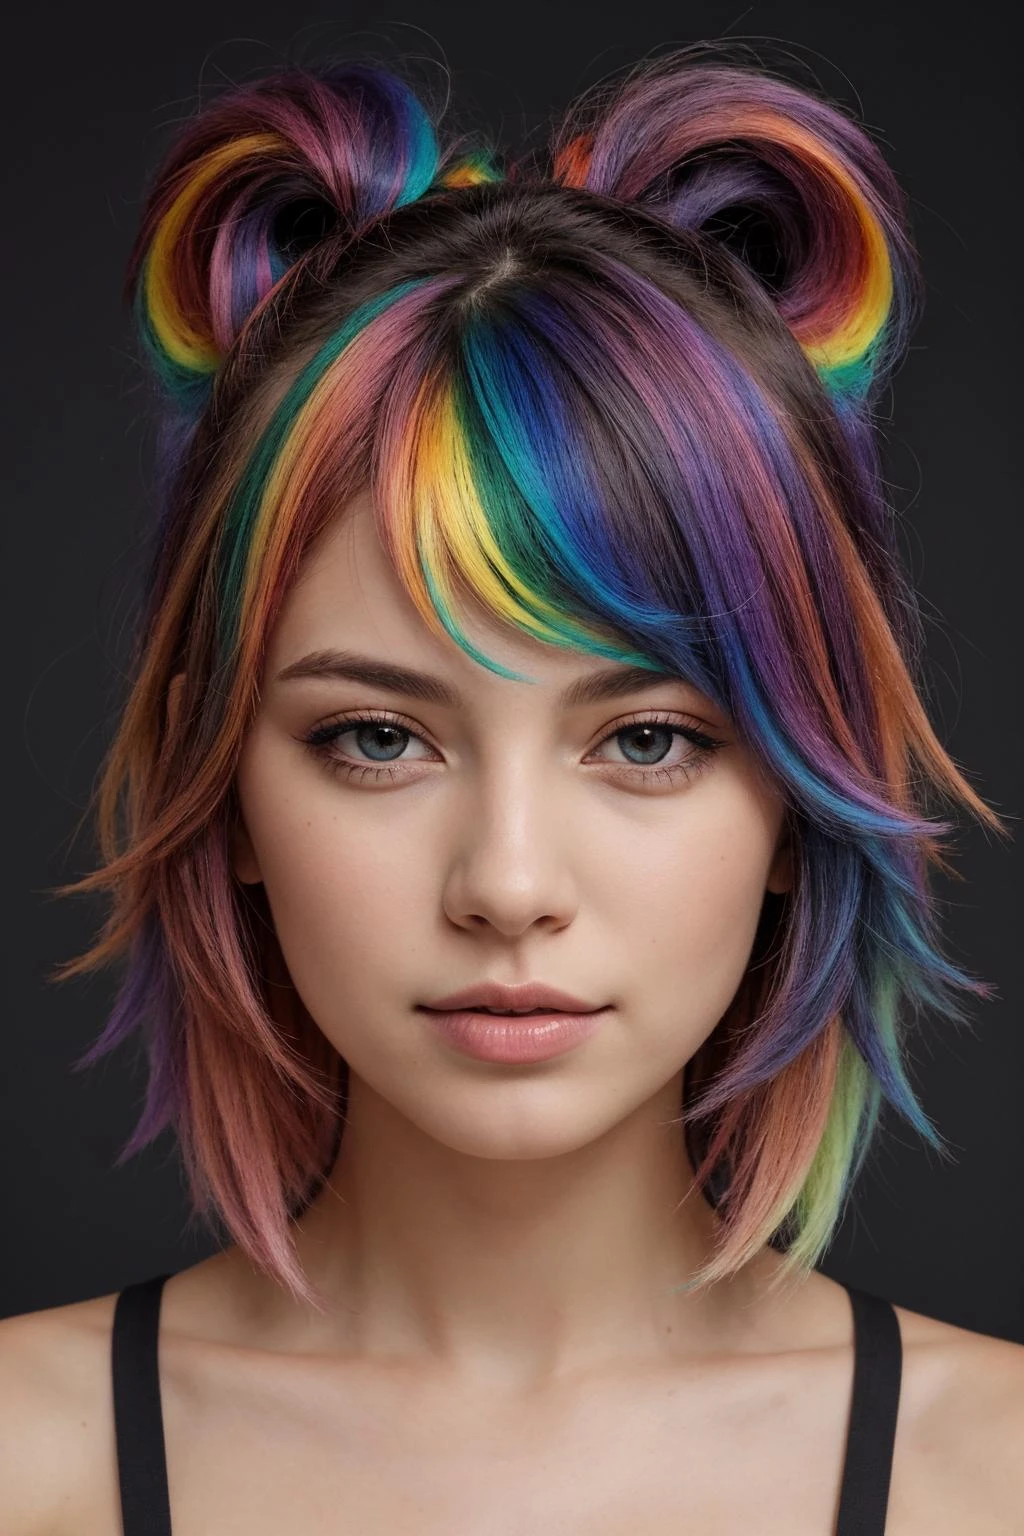 un retrato de una niña,
(pelo arcoiris:1.3)